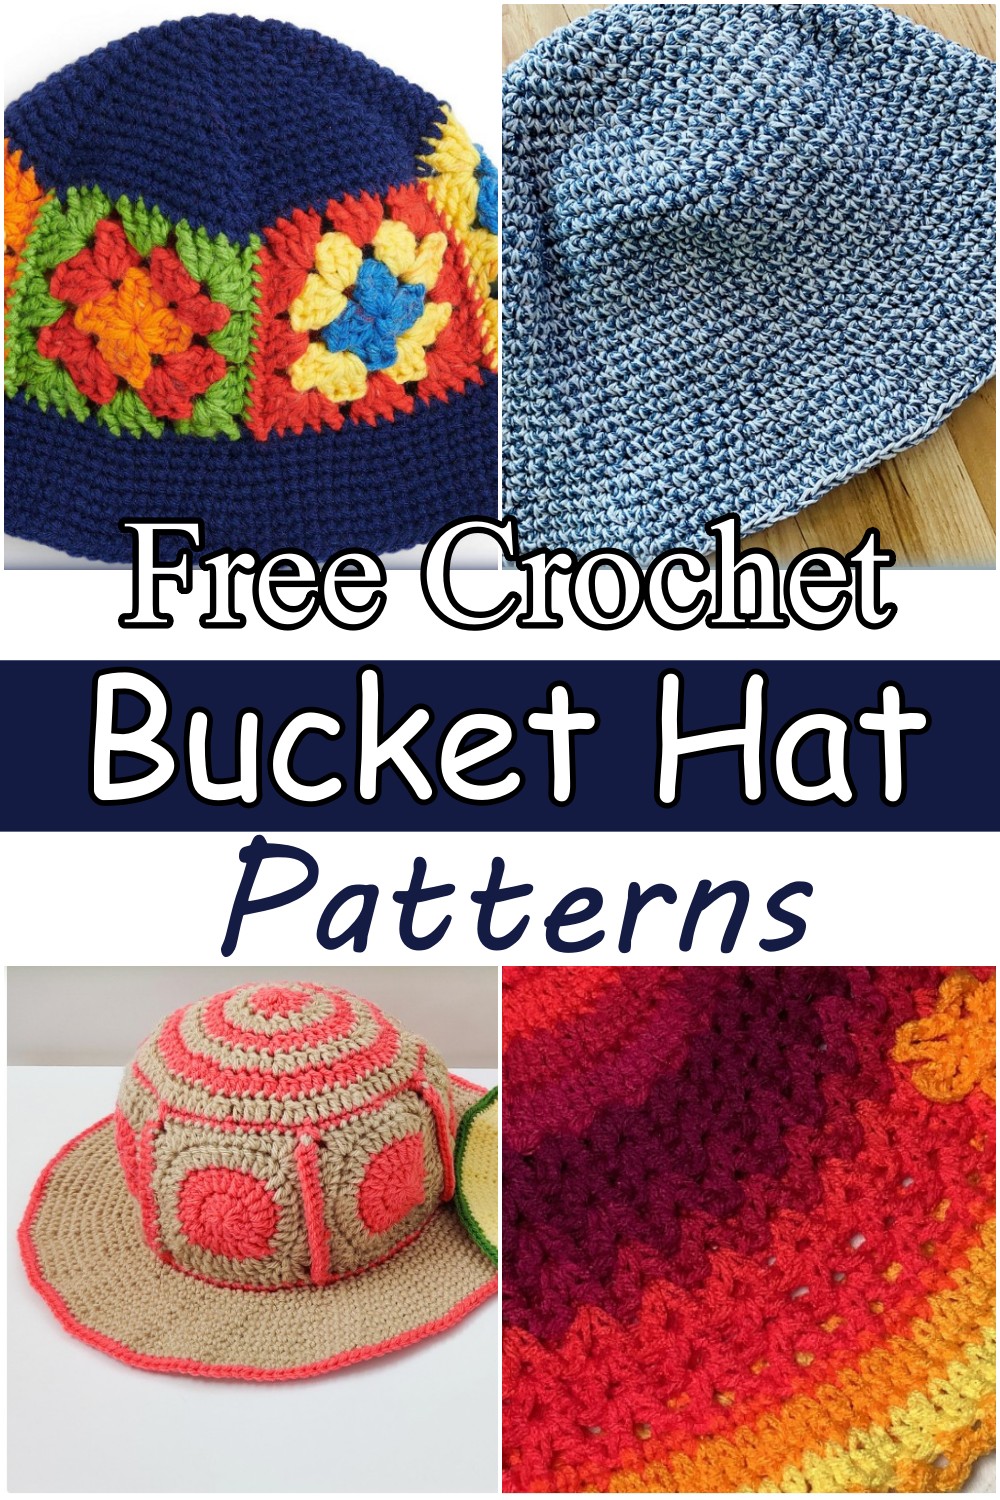 10 Free Crochet Bucket Hat Patterns